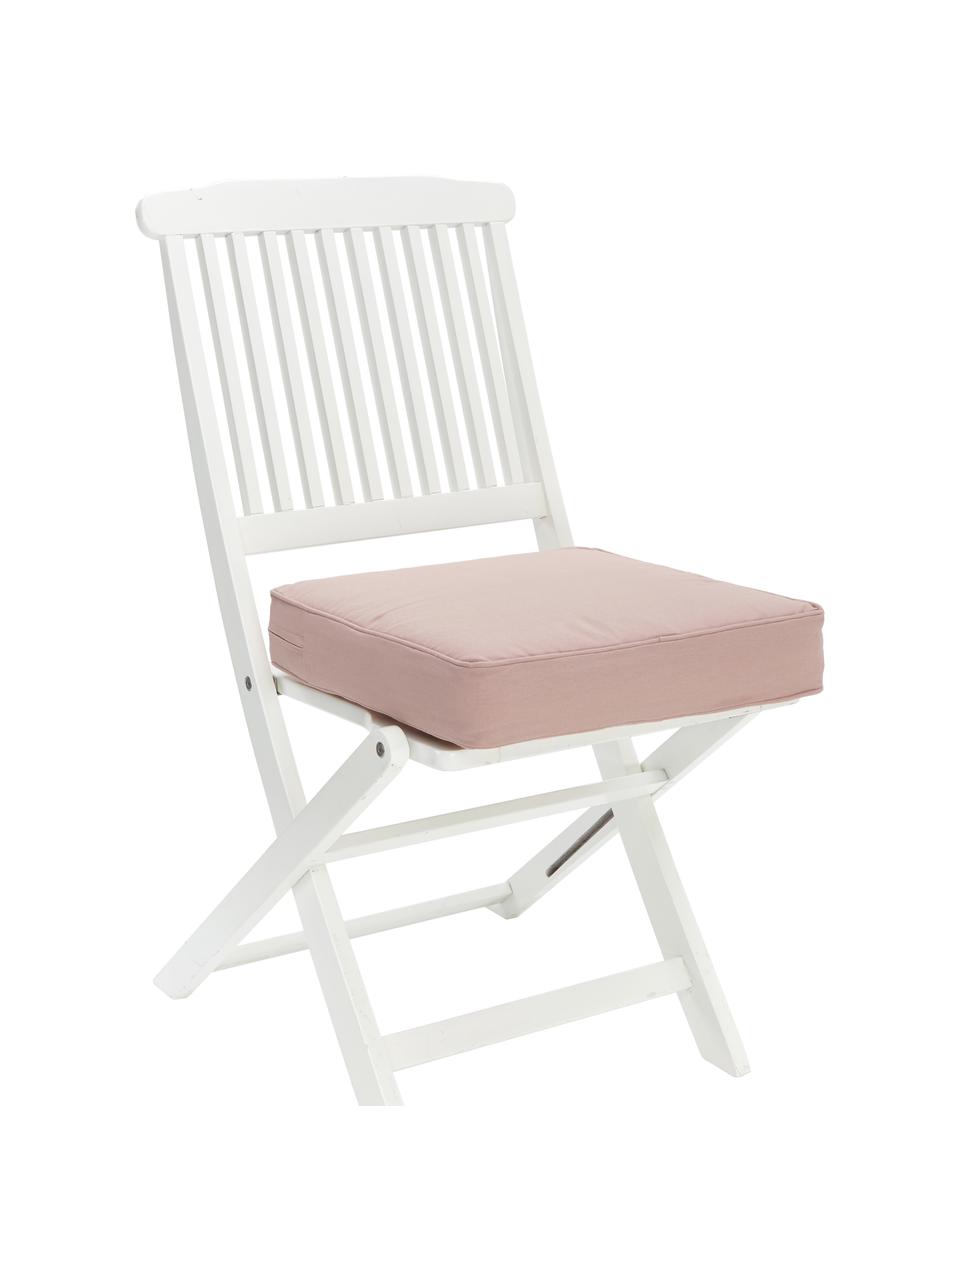 Cuscino sedia alto in cotone rosa  Zoey, Rivestimento: 100% cotone, Rosa, Larg. 40 x Lung. 40 cm